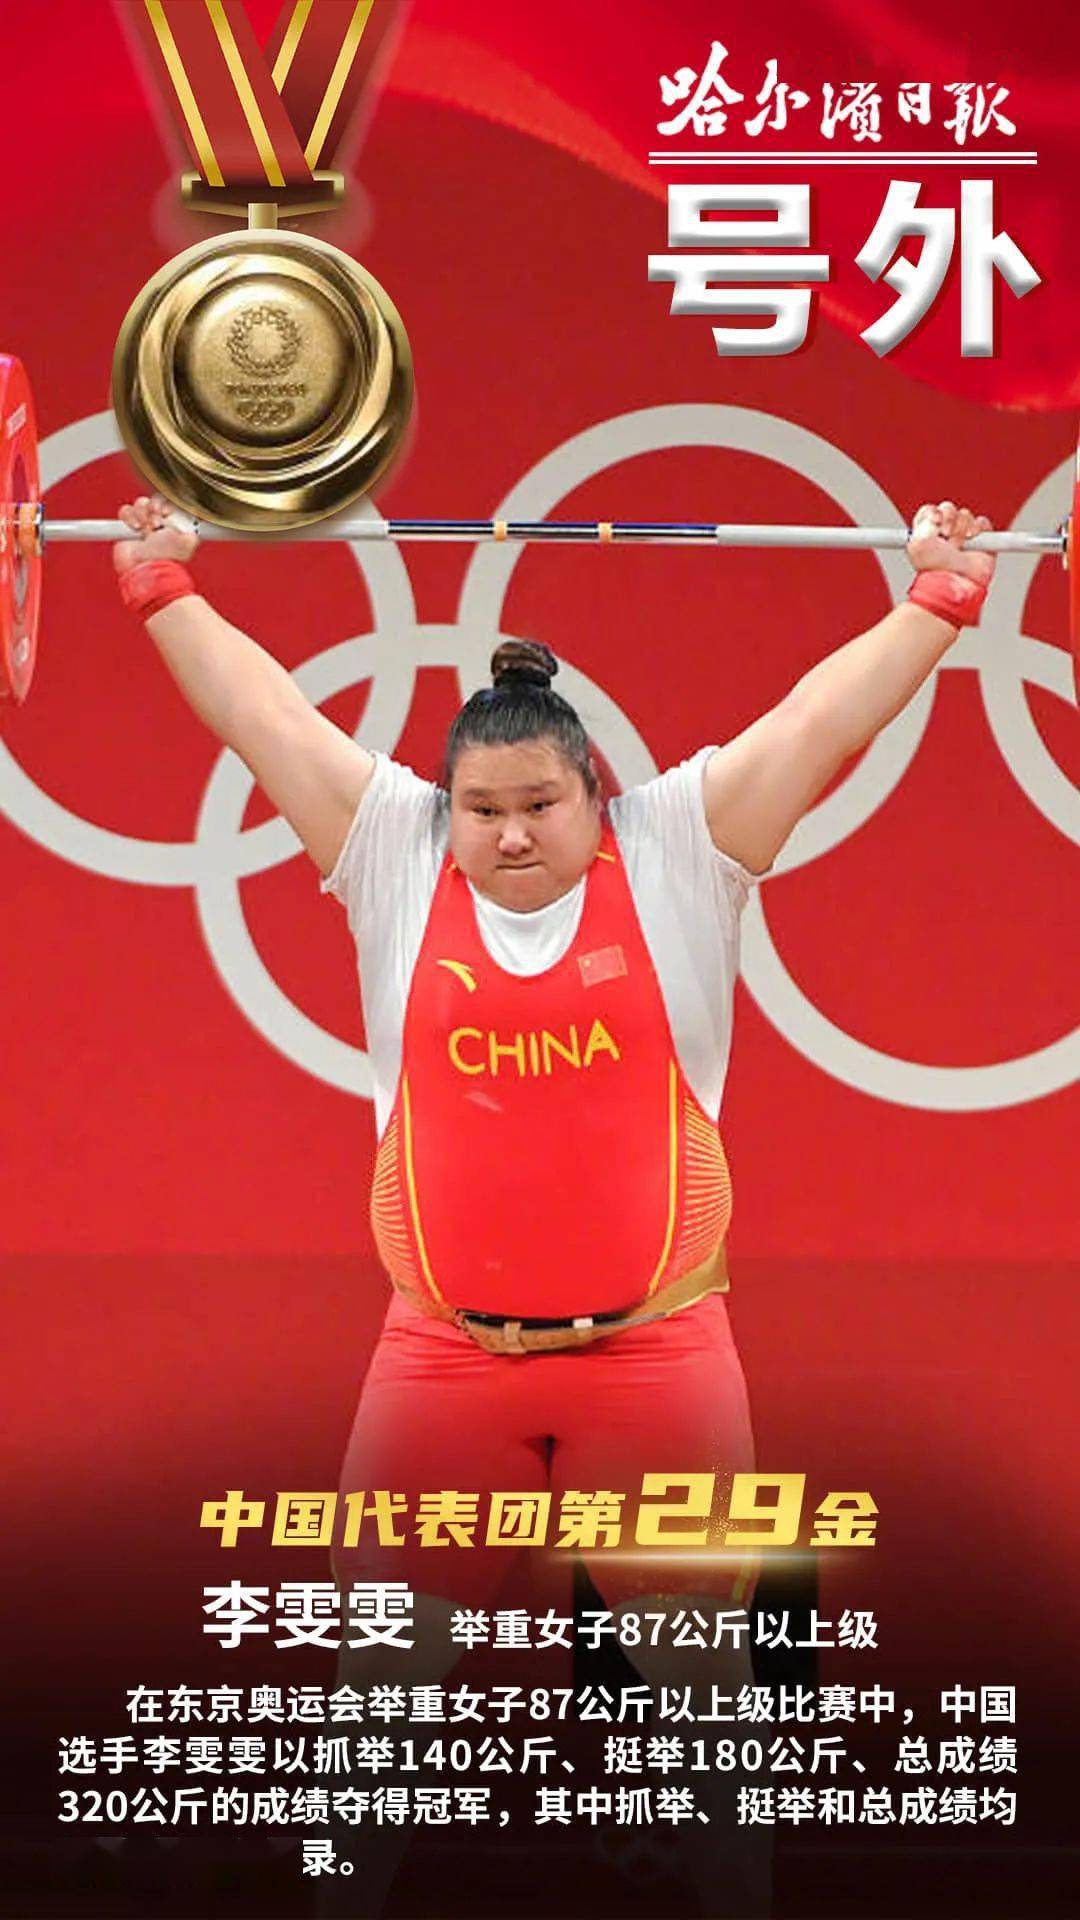 在举重女子87公斤以上级比赛中中国运动员李雯雯实力碾压稳获冠军!